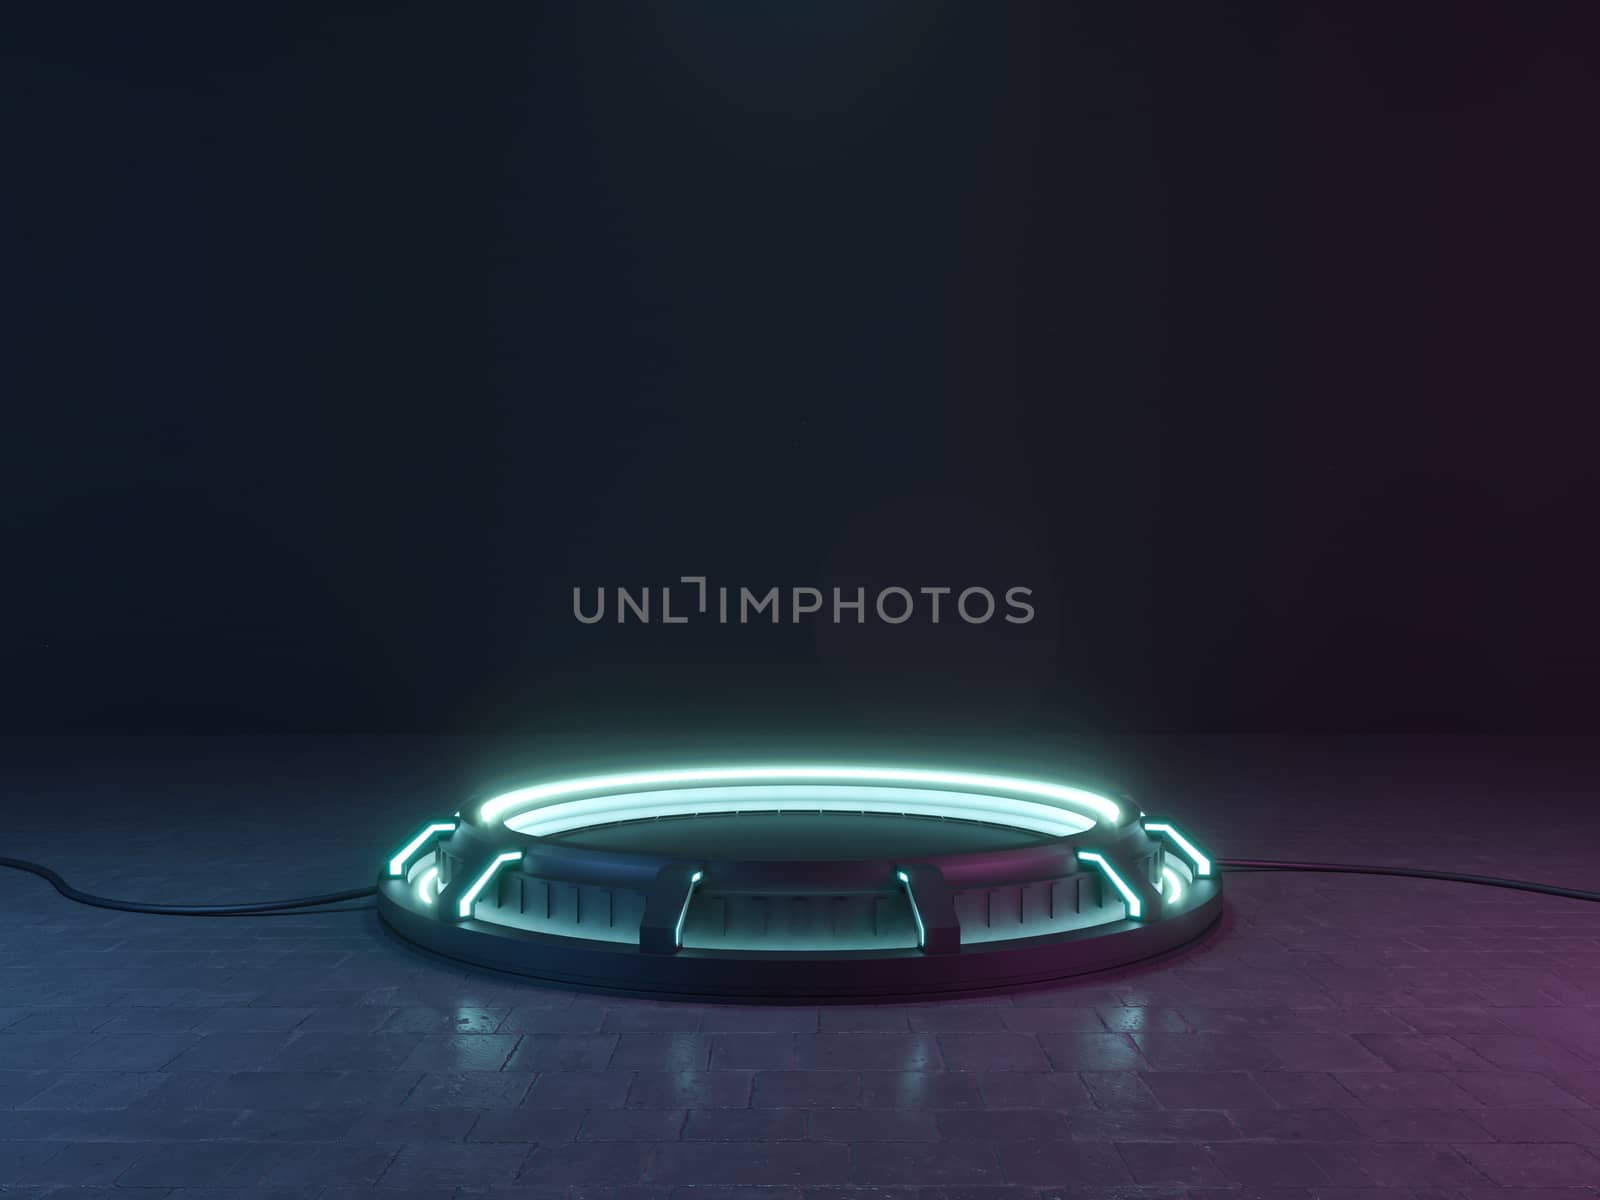 Futuristic Sci Fi Empty Stage neon. 3d rendering